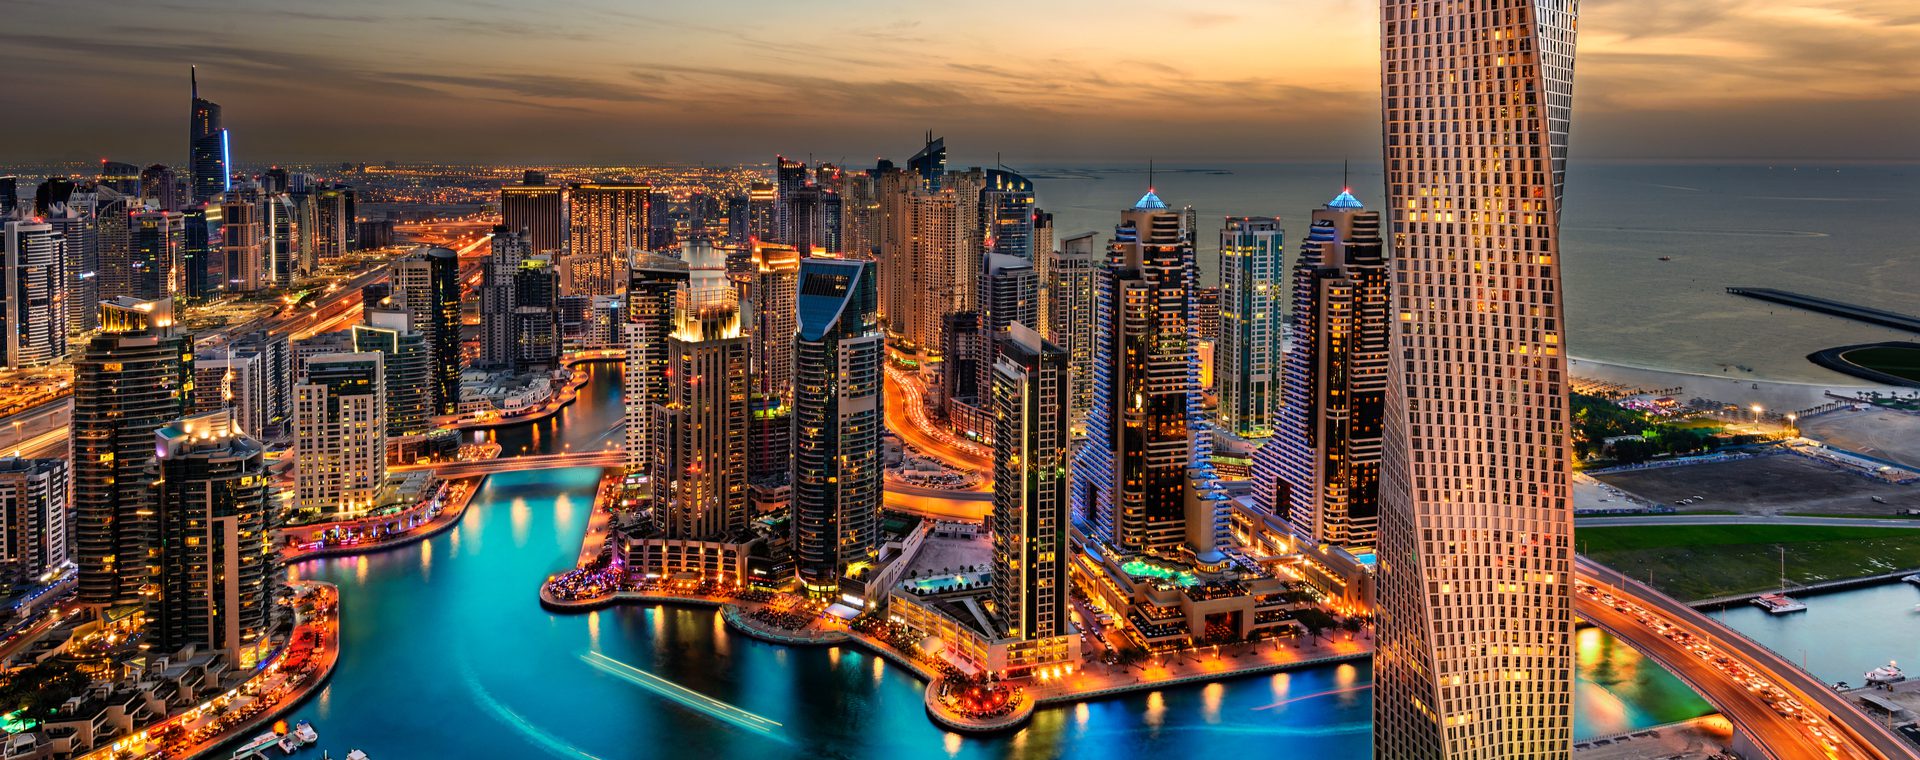 Wereldexpo 2020 in Dubai